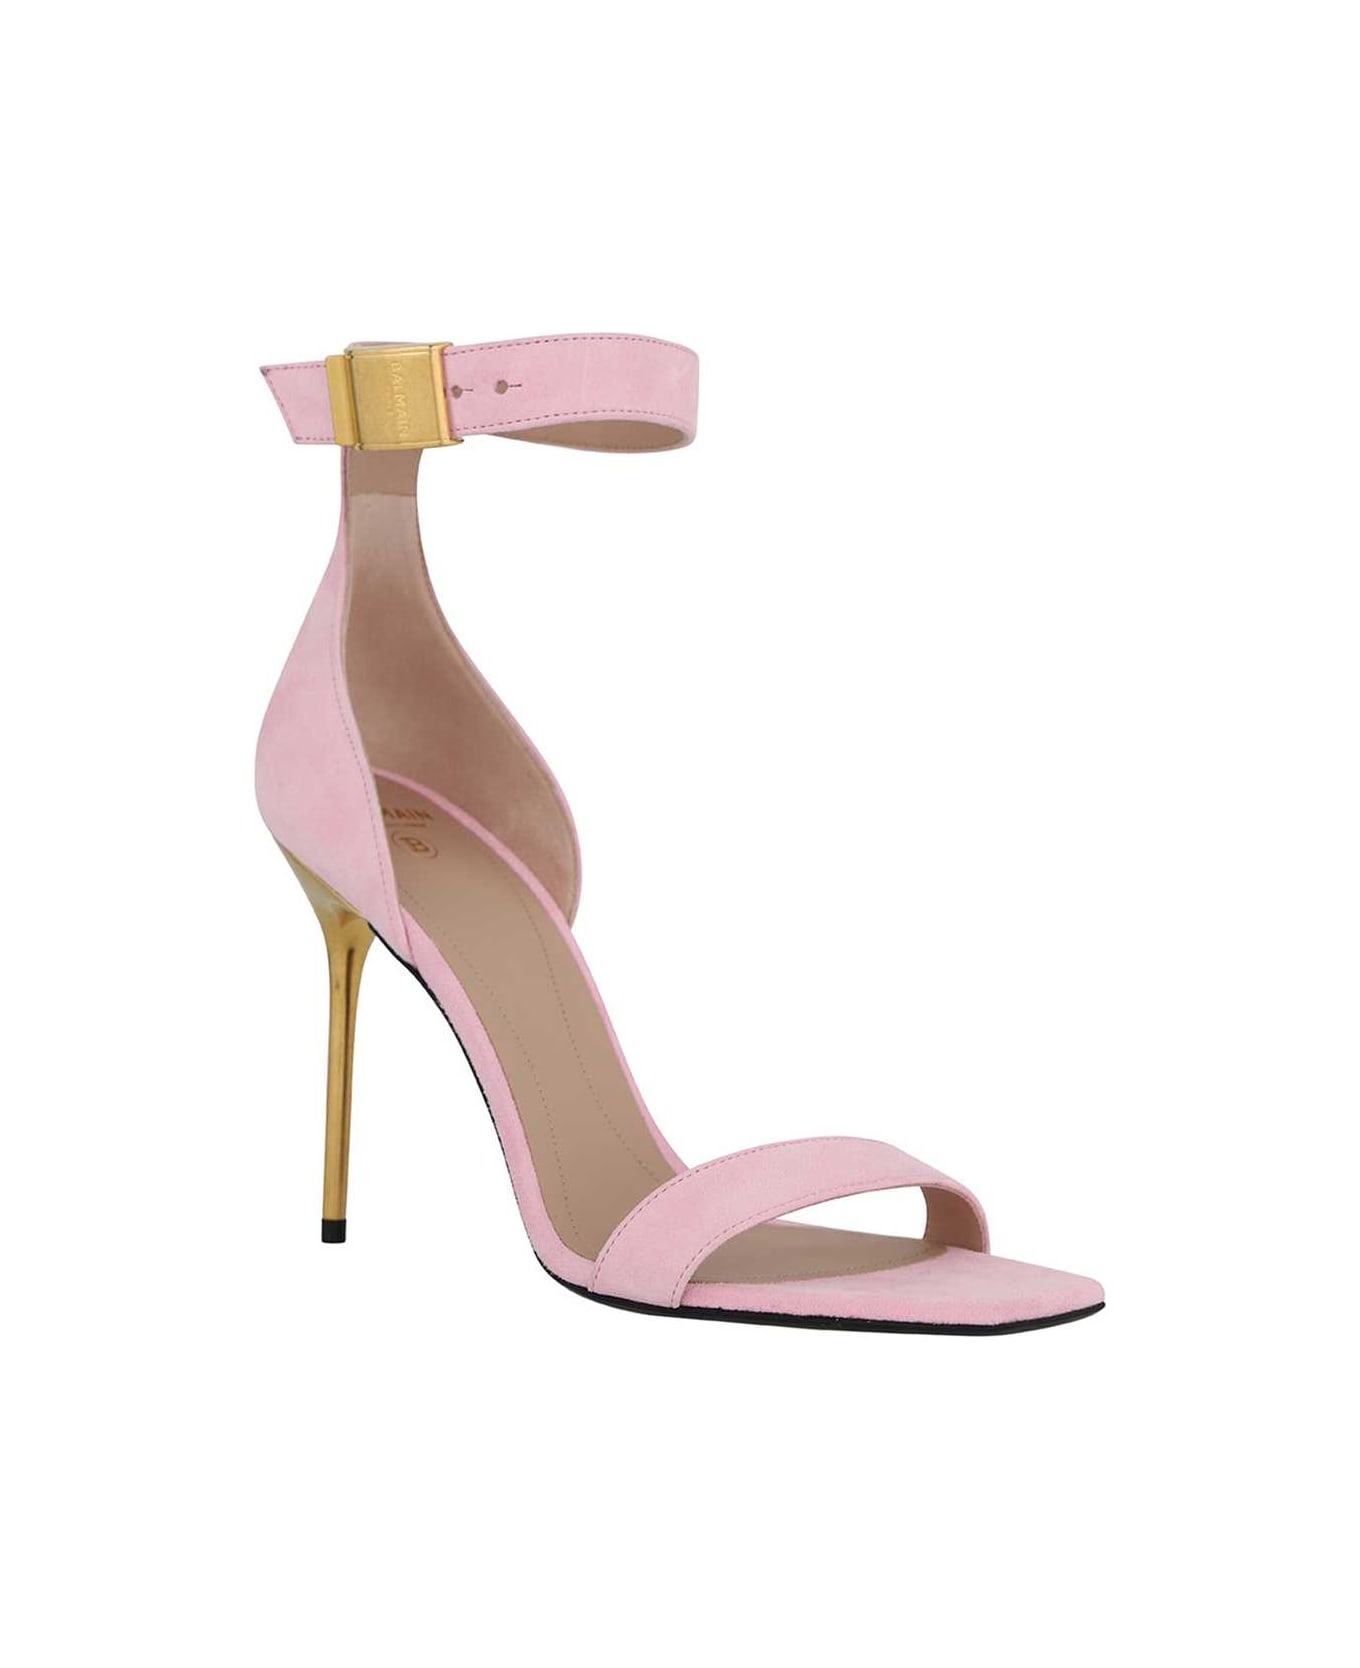 Balmain Heeled Sandals - Pink